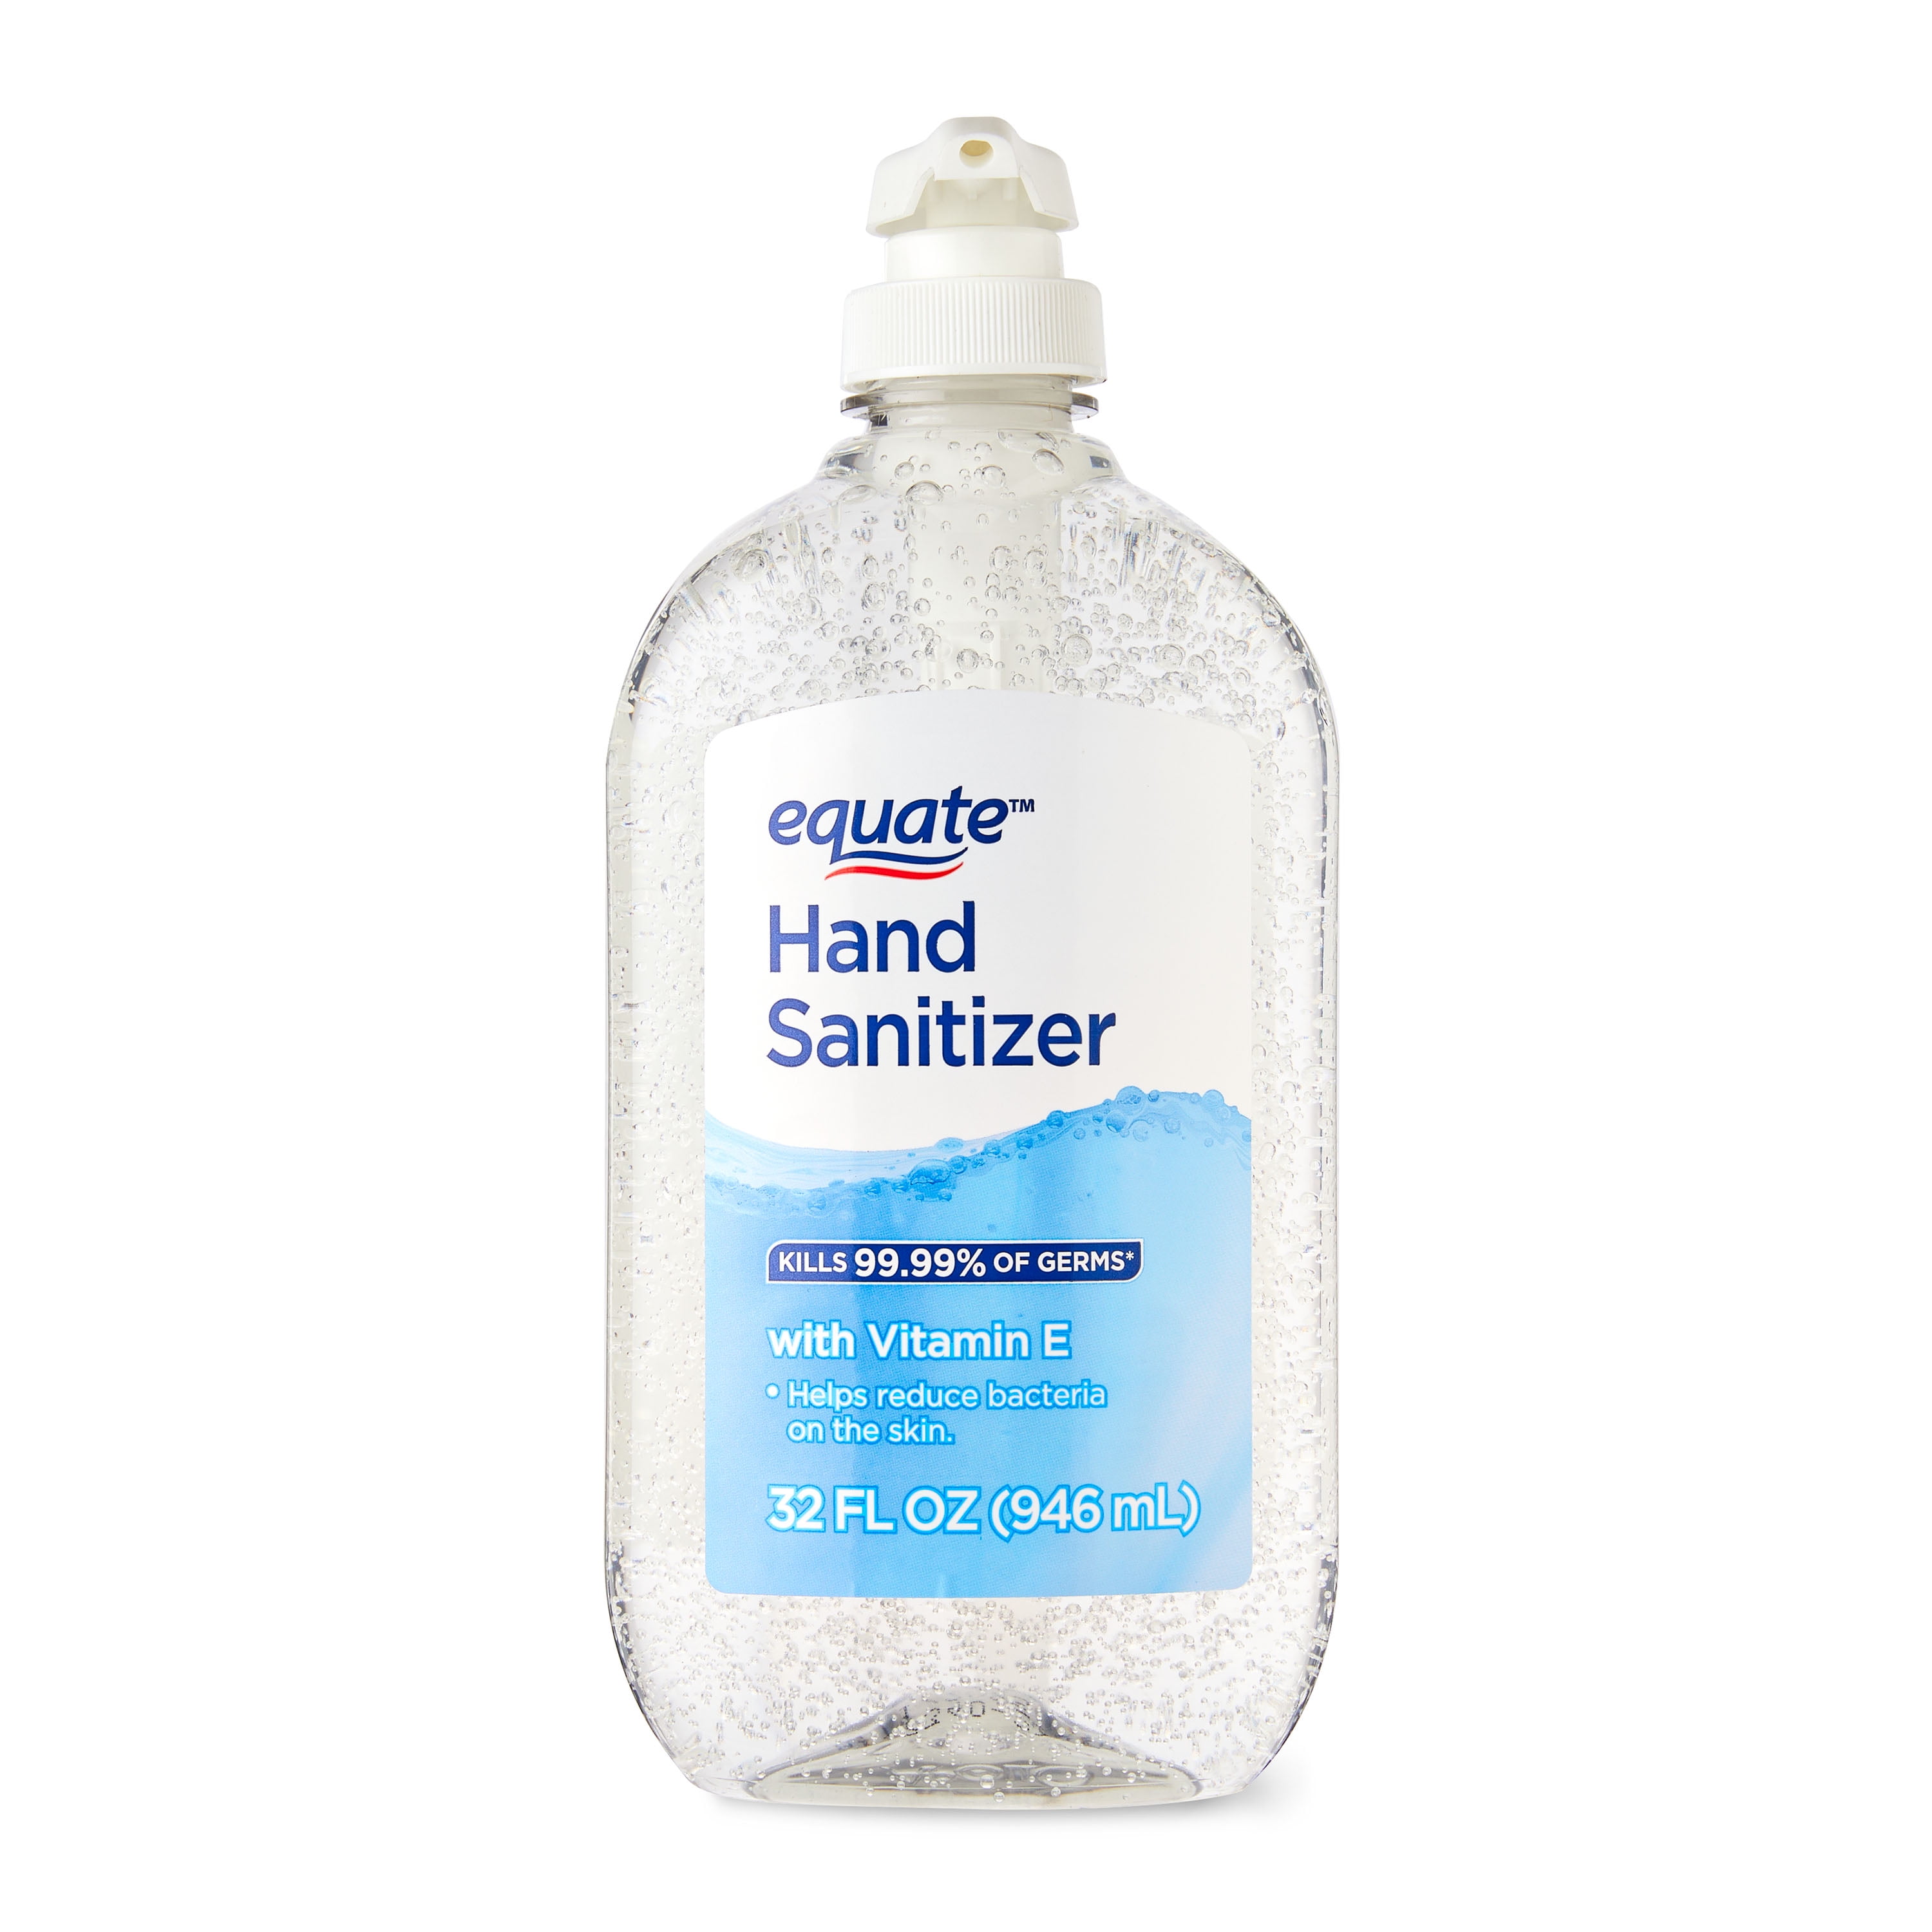 Equate Original Hand Sanitizer 32FL OZ